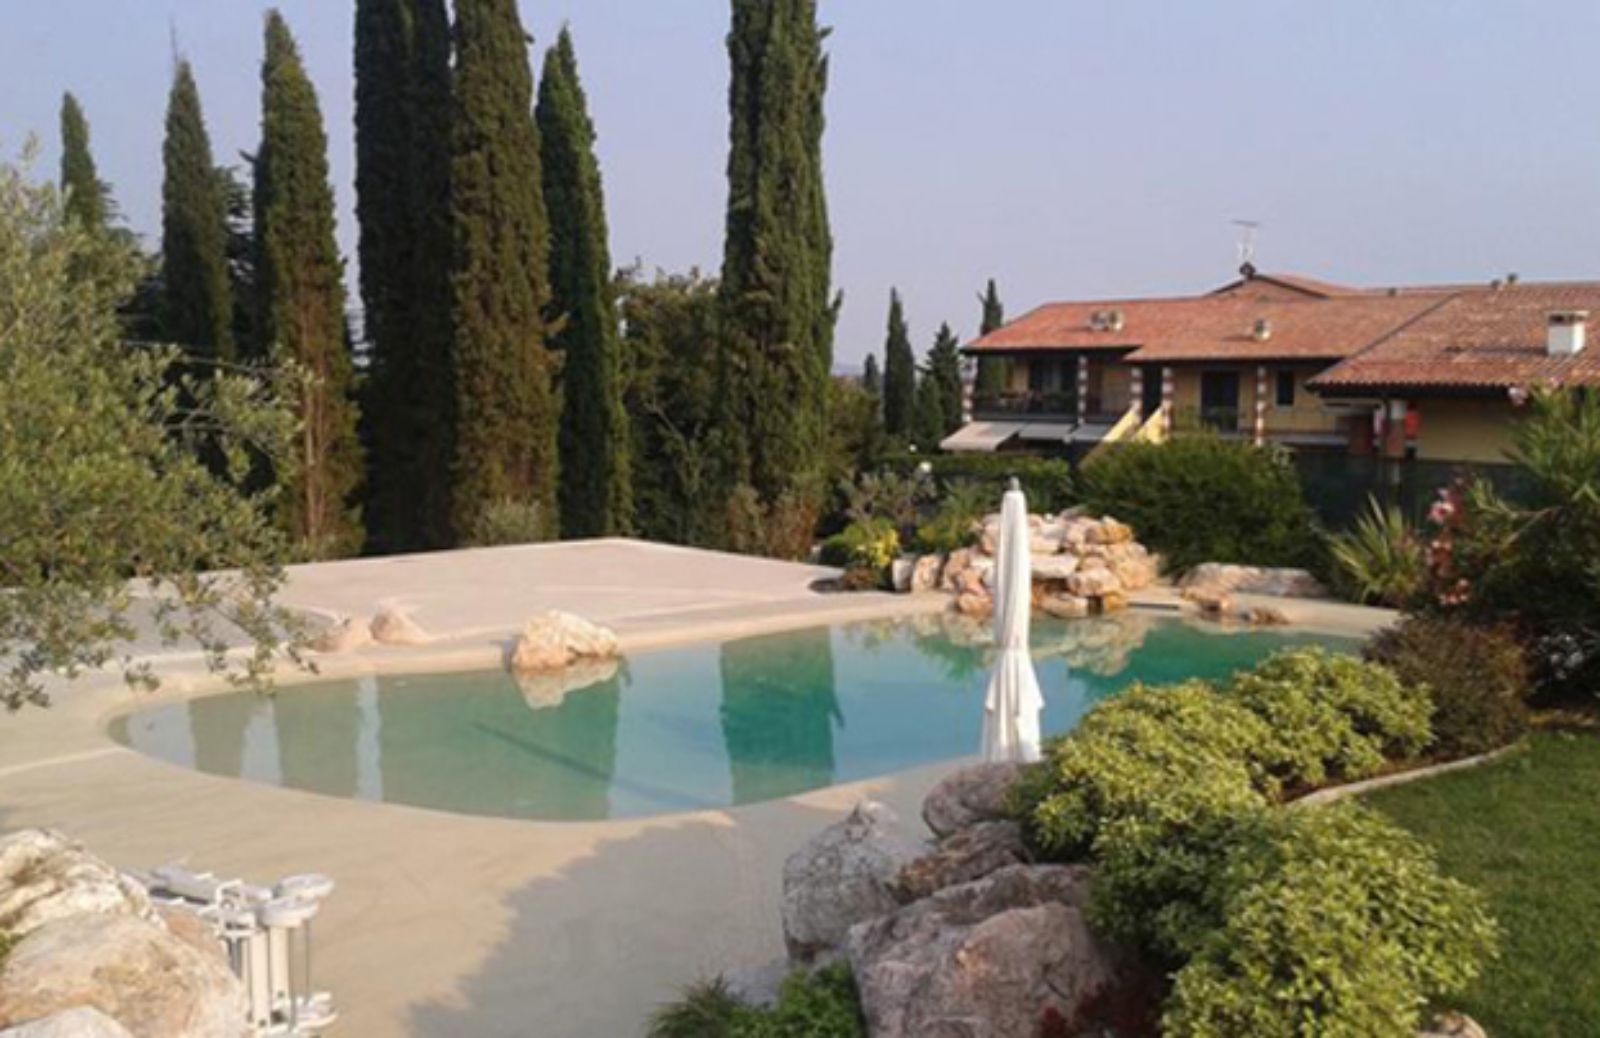 Le 10 regole per armonizzare una piscina con il paesaggio